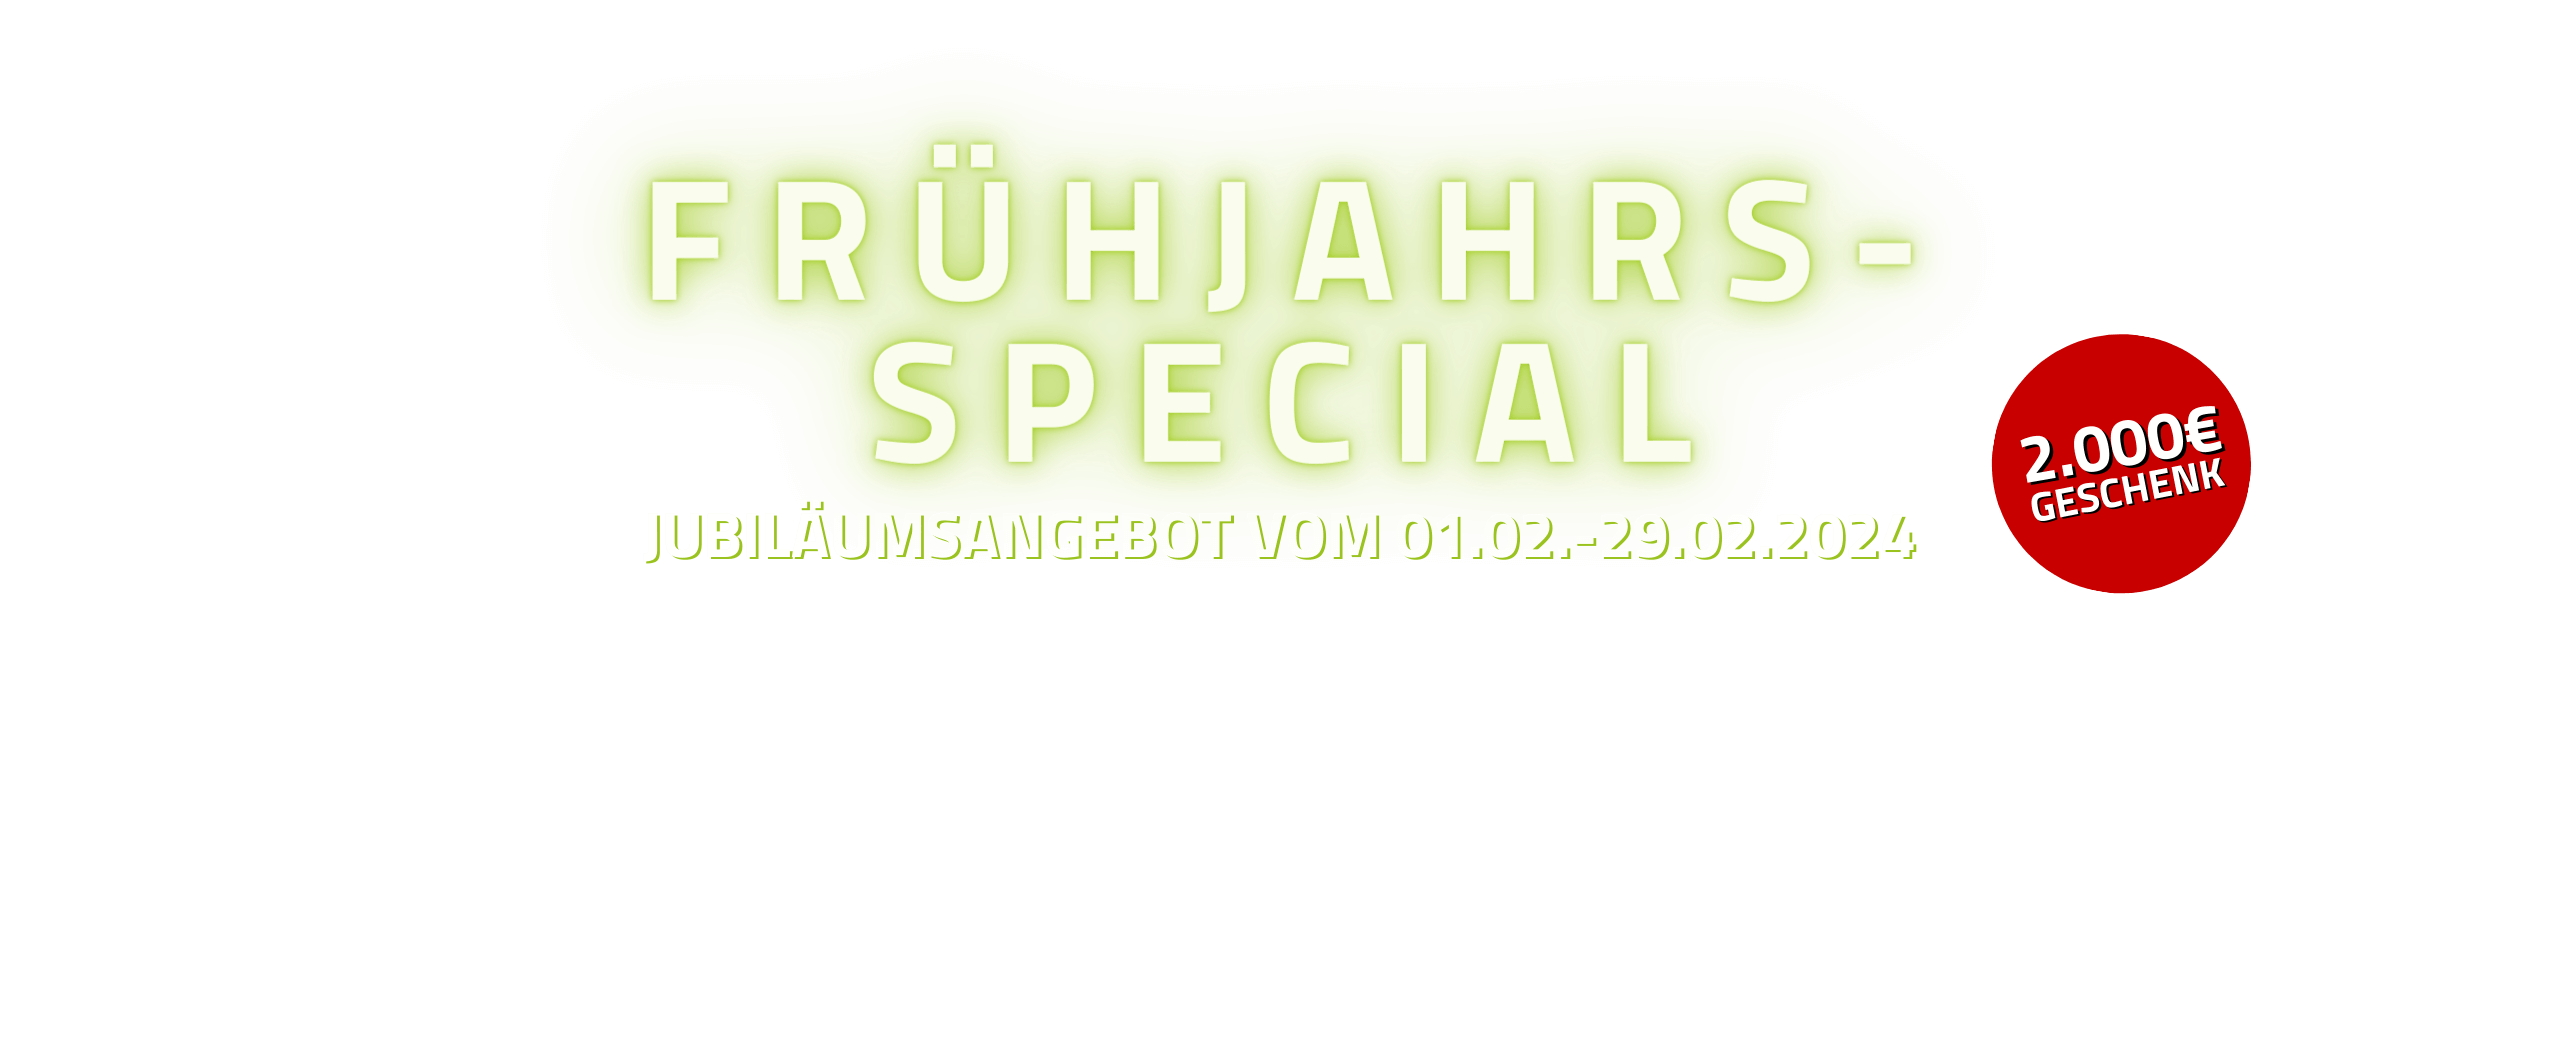 Ein schwarz-grünes Logo mit der Aufschrift „fruitjahr's special“ und einem Blackweek-Special-Touch.